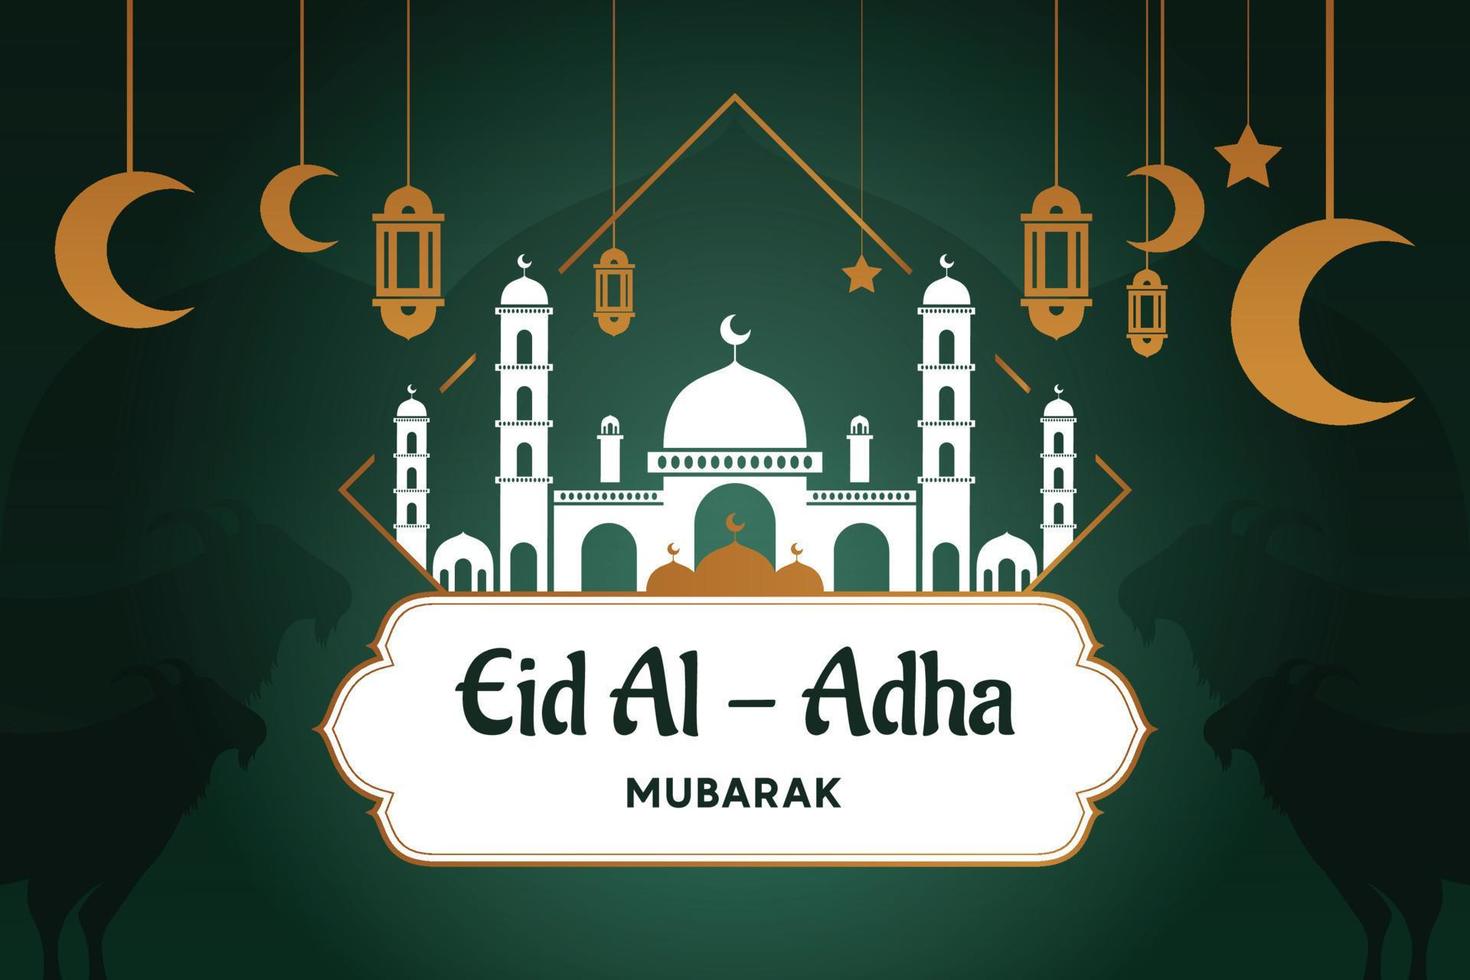 eid Mubarak celebracion saludo tarjeta modelo. festivo diseño para musulmán festival eid Alabama adha con cabra, silueta de mezquita, linternas y creciente. vector ilustración.